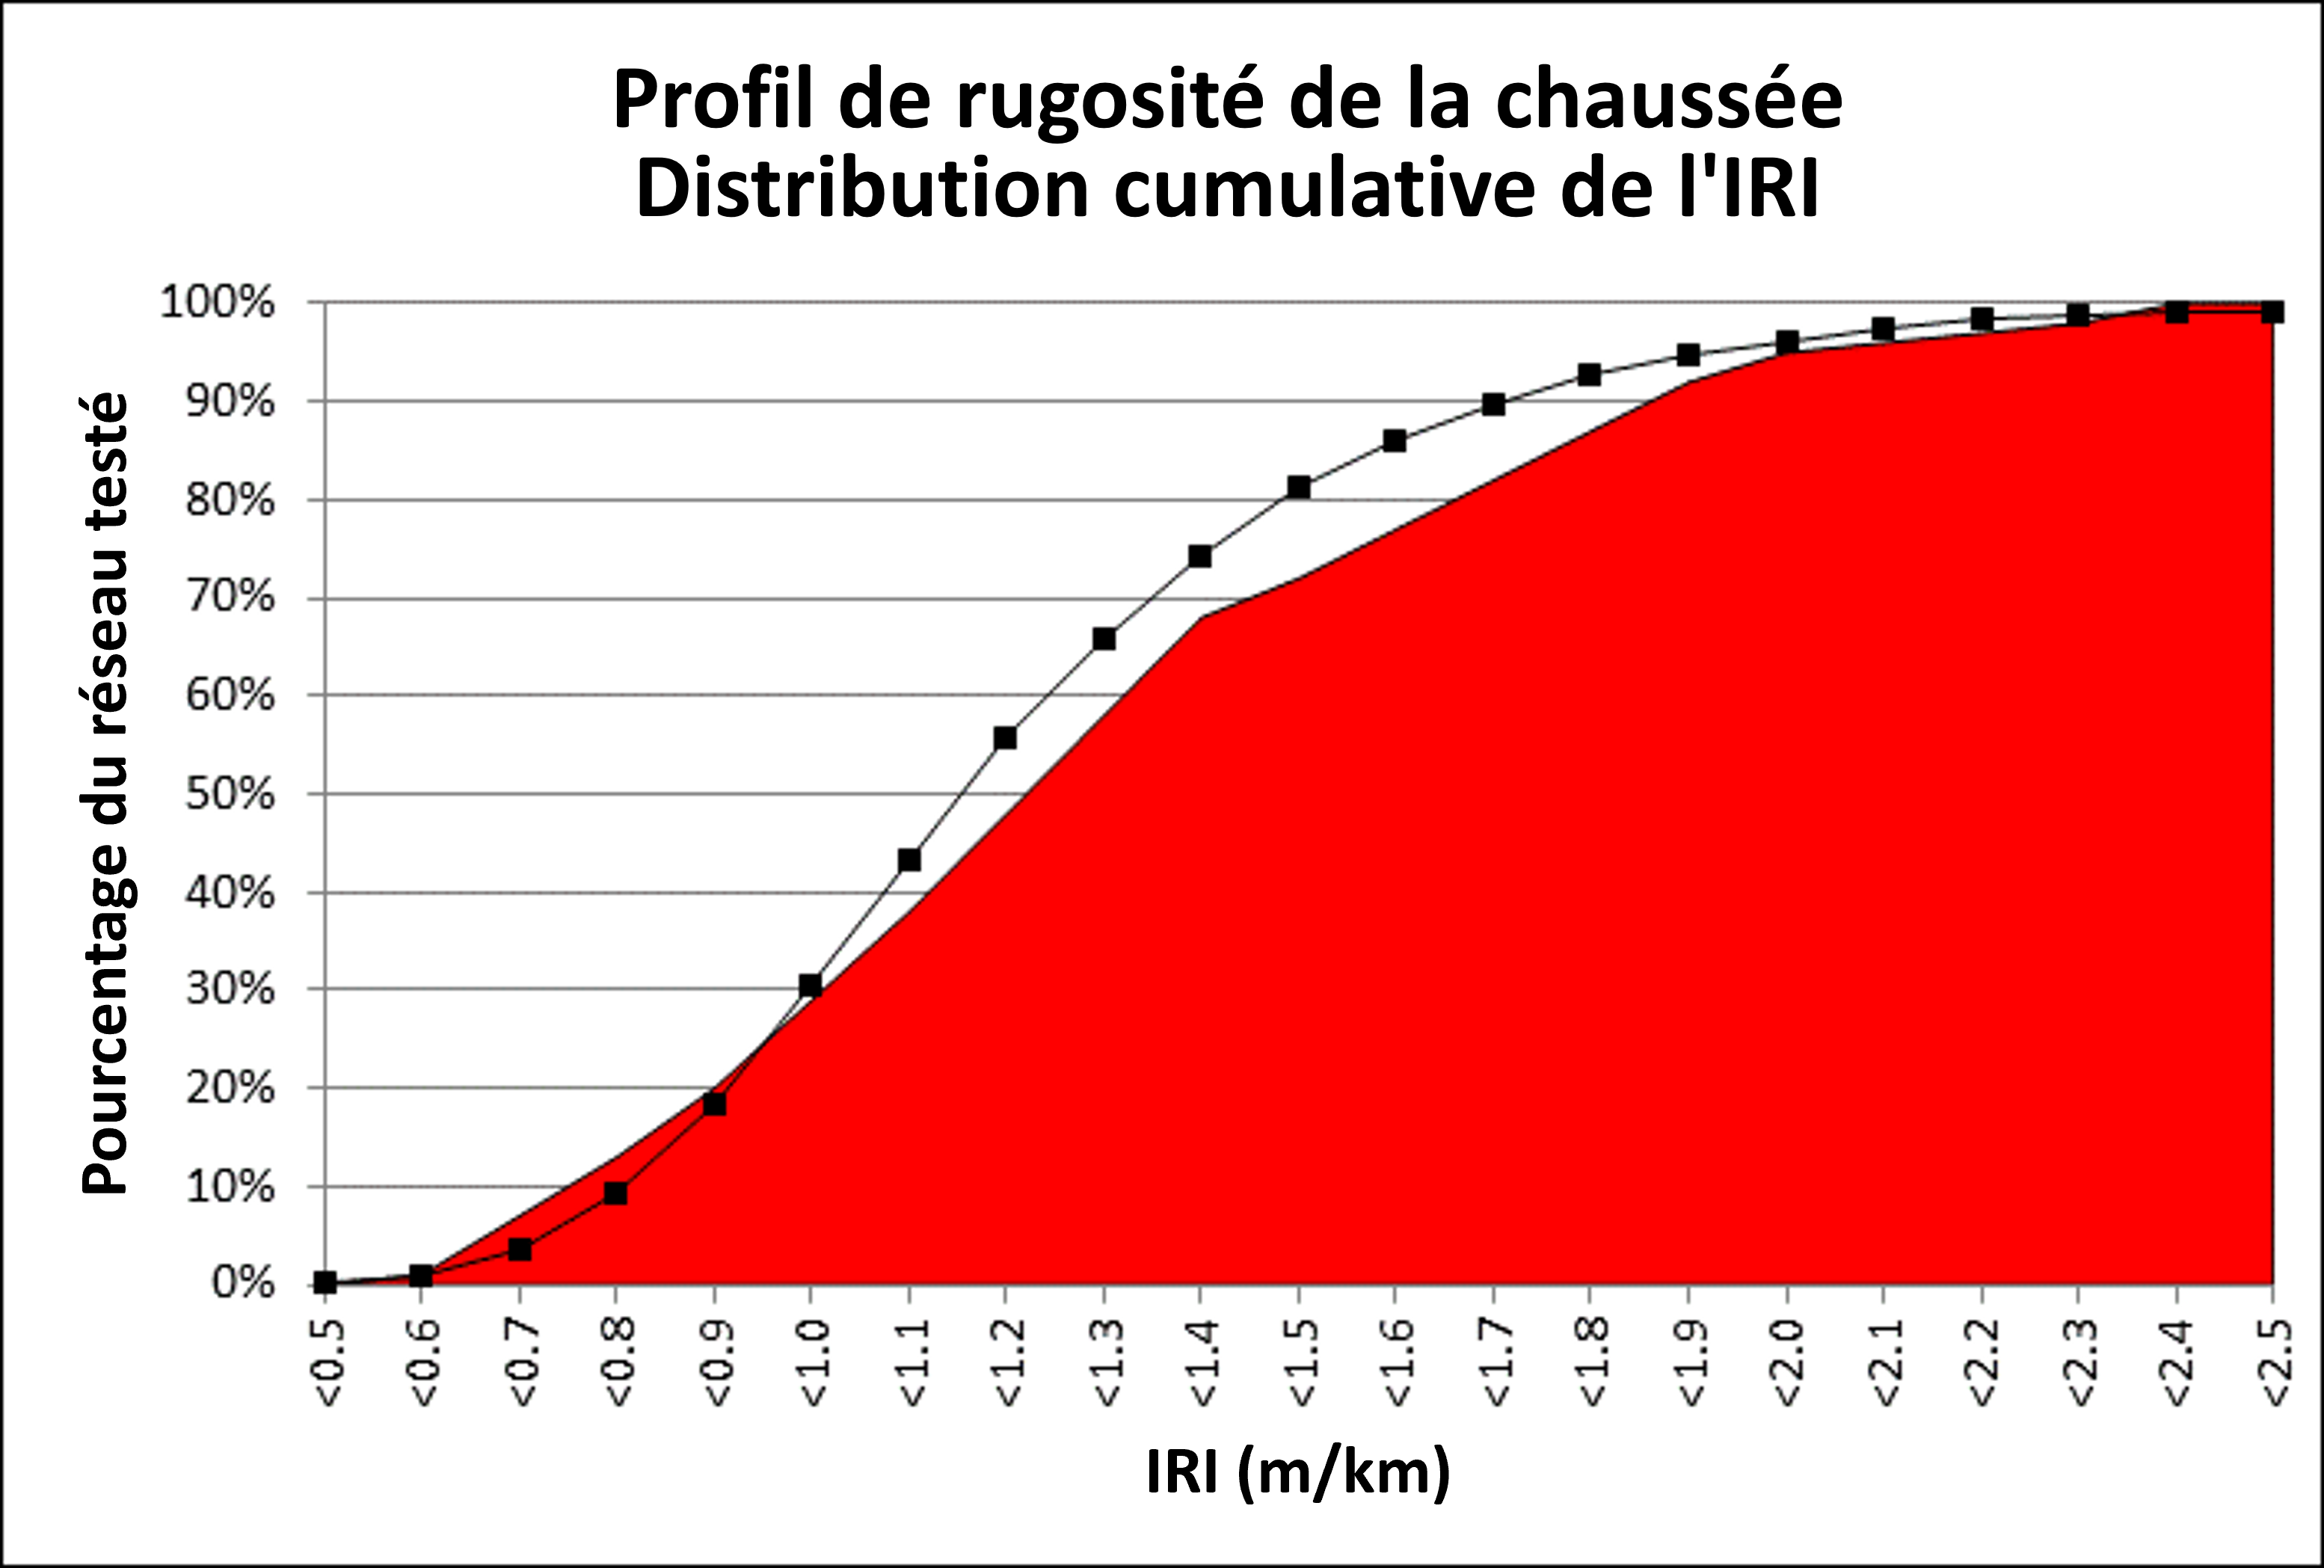 Figure 1.3.5.1 Distribution cumulative du profil IRI